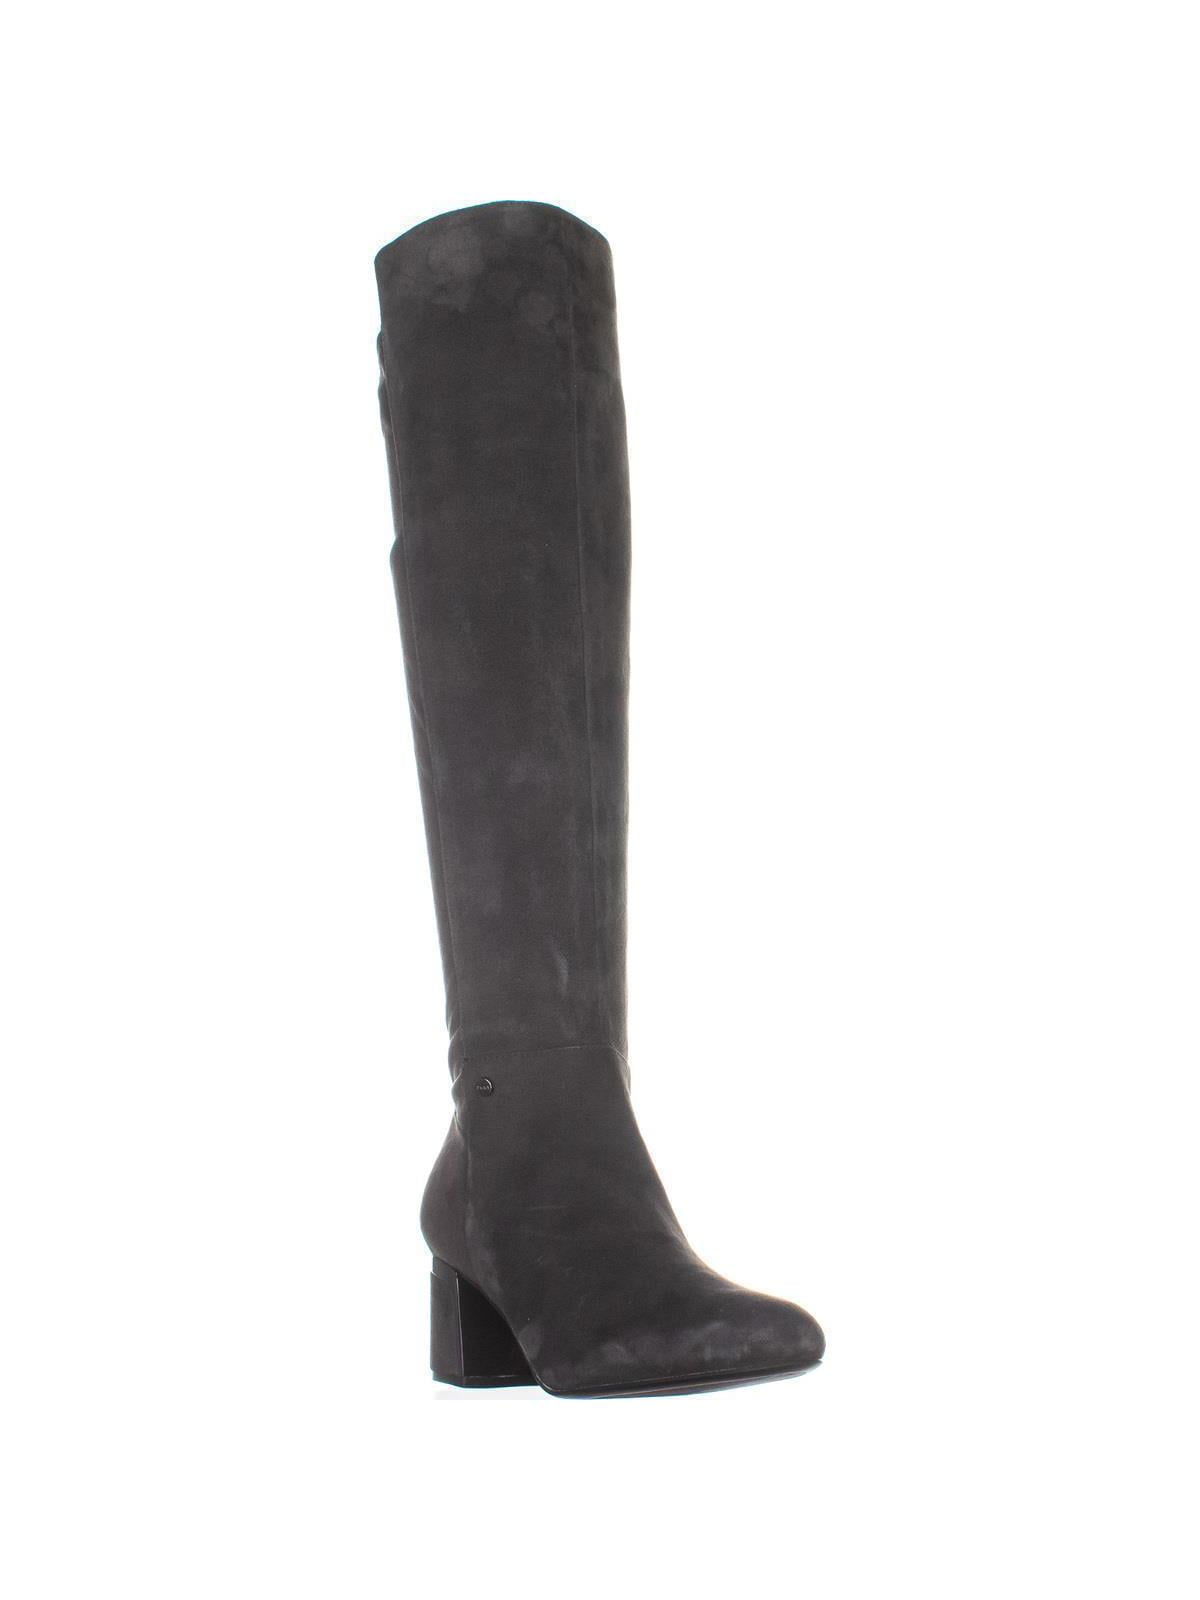 DKNY Cora Knee High Boots, Dark Gray 